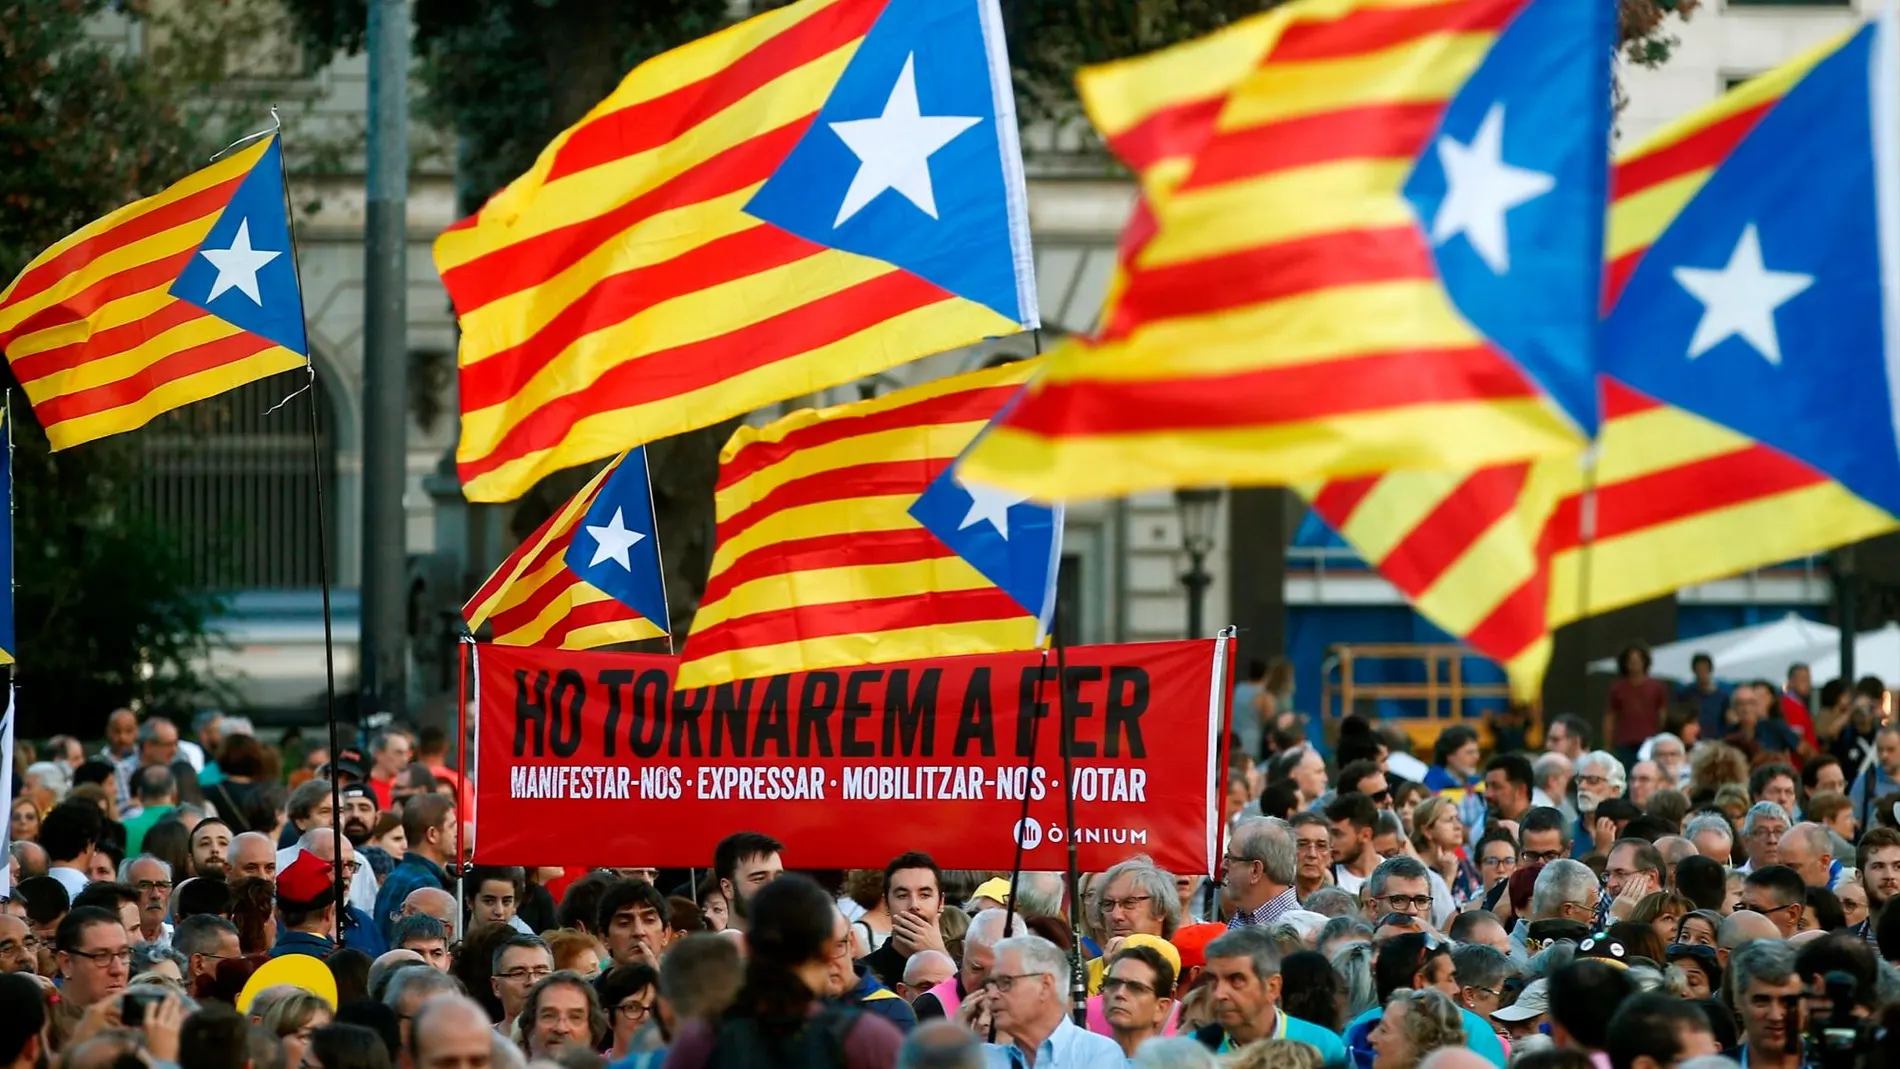 Manifestación en Barcelona convocada por la ANC bajo el lema "Acabemos lo que empezamos. Ganemos la independencia"/Efe